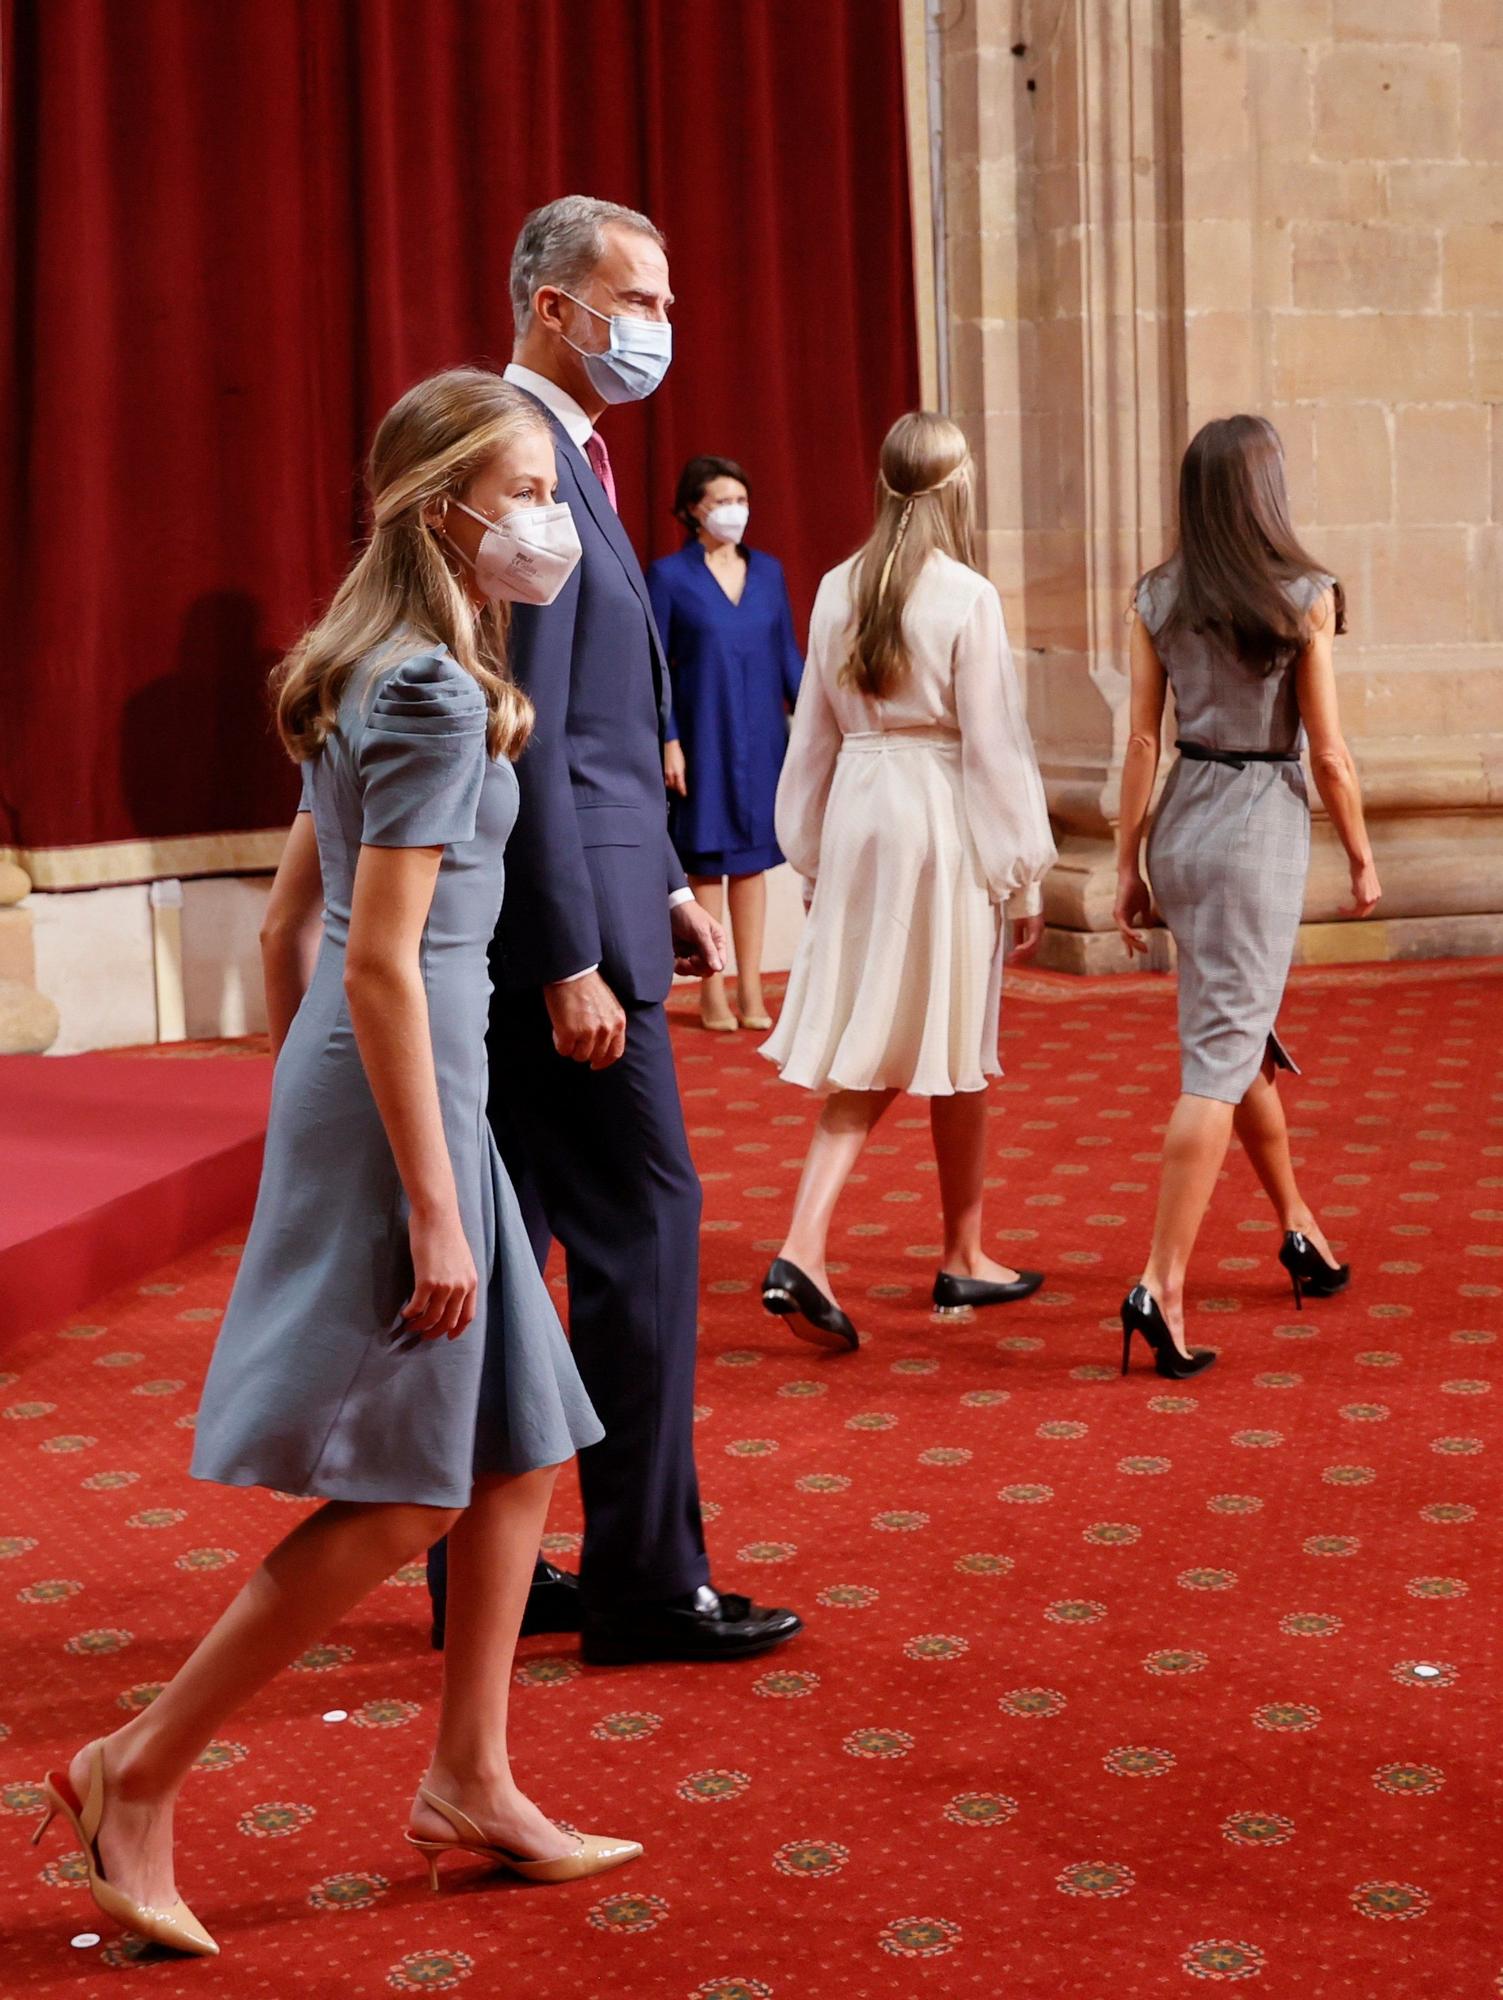 El look de la Familia Real durante las audiencias en el Reconquista